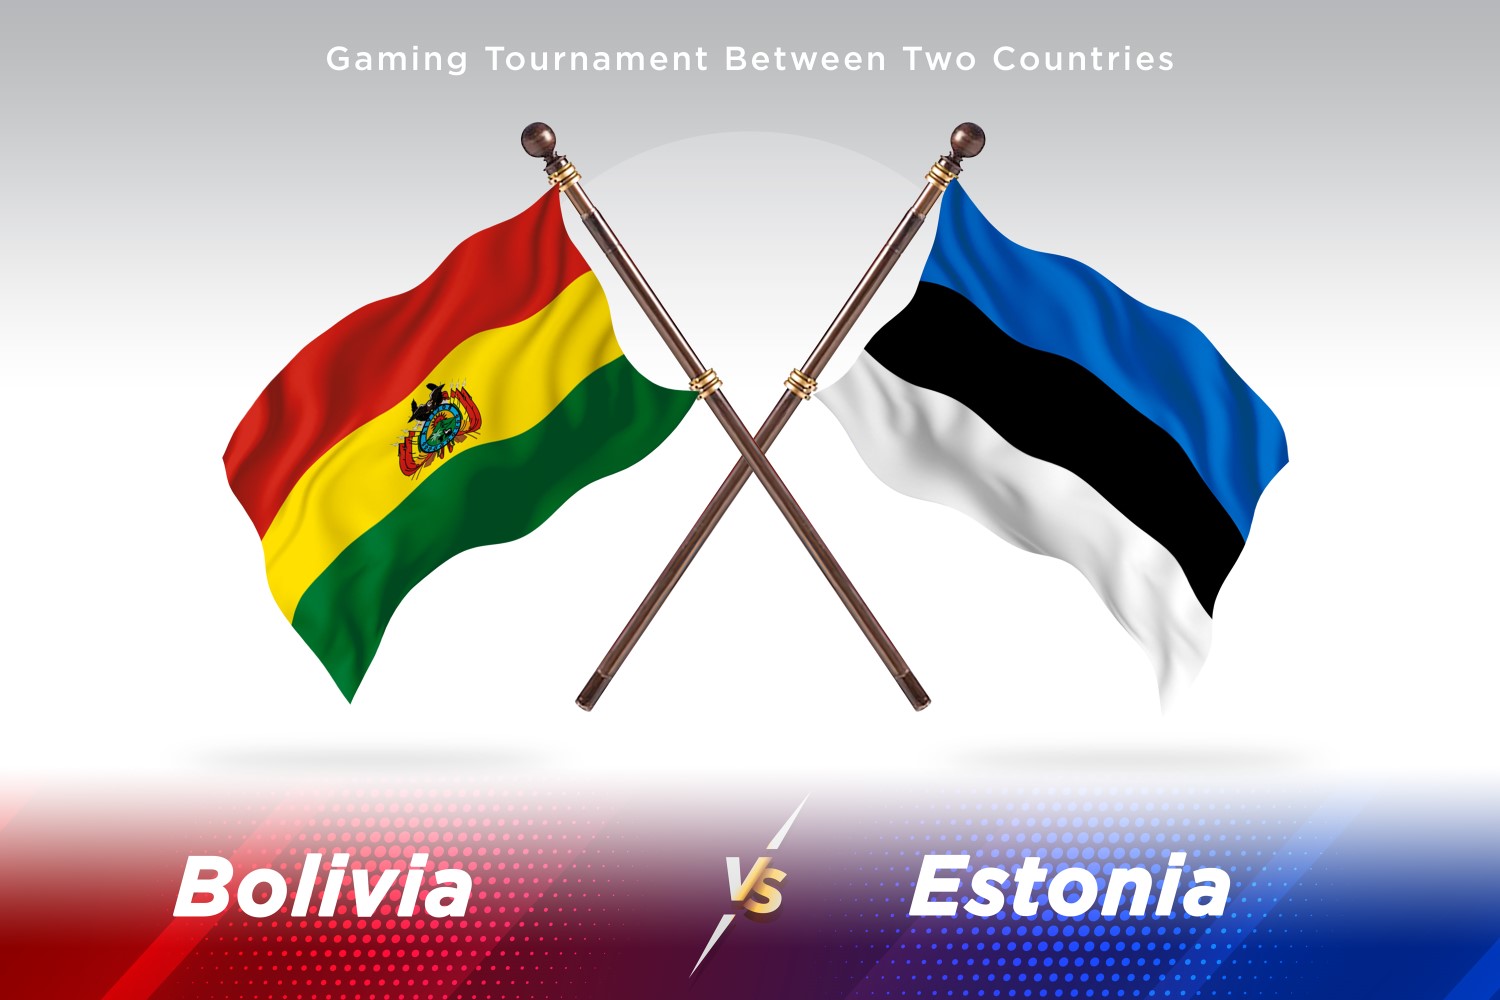 Bolivia versus Estonia Two Flags